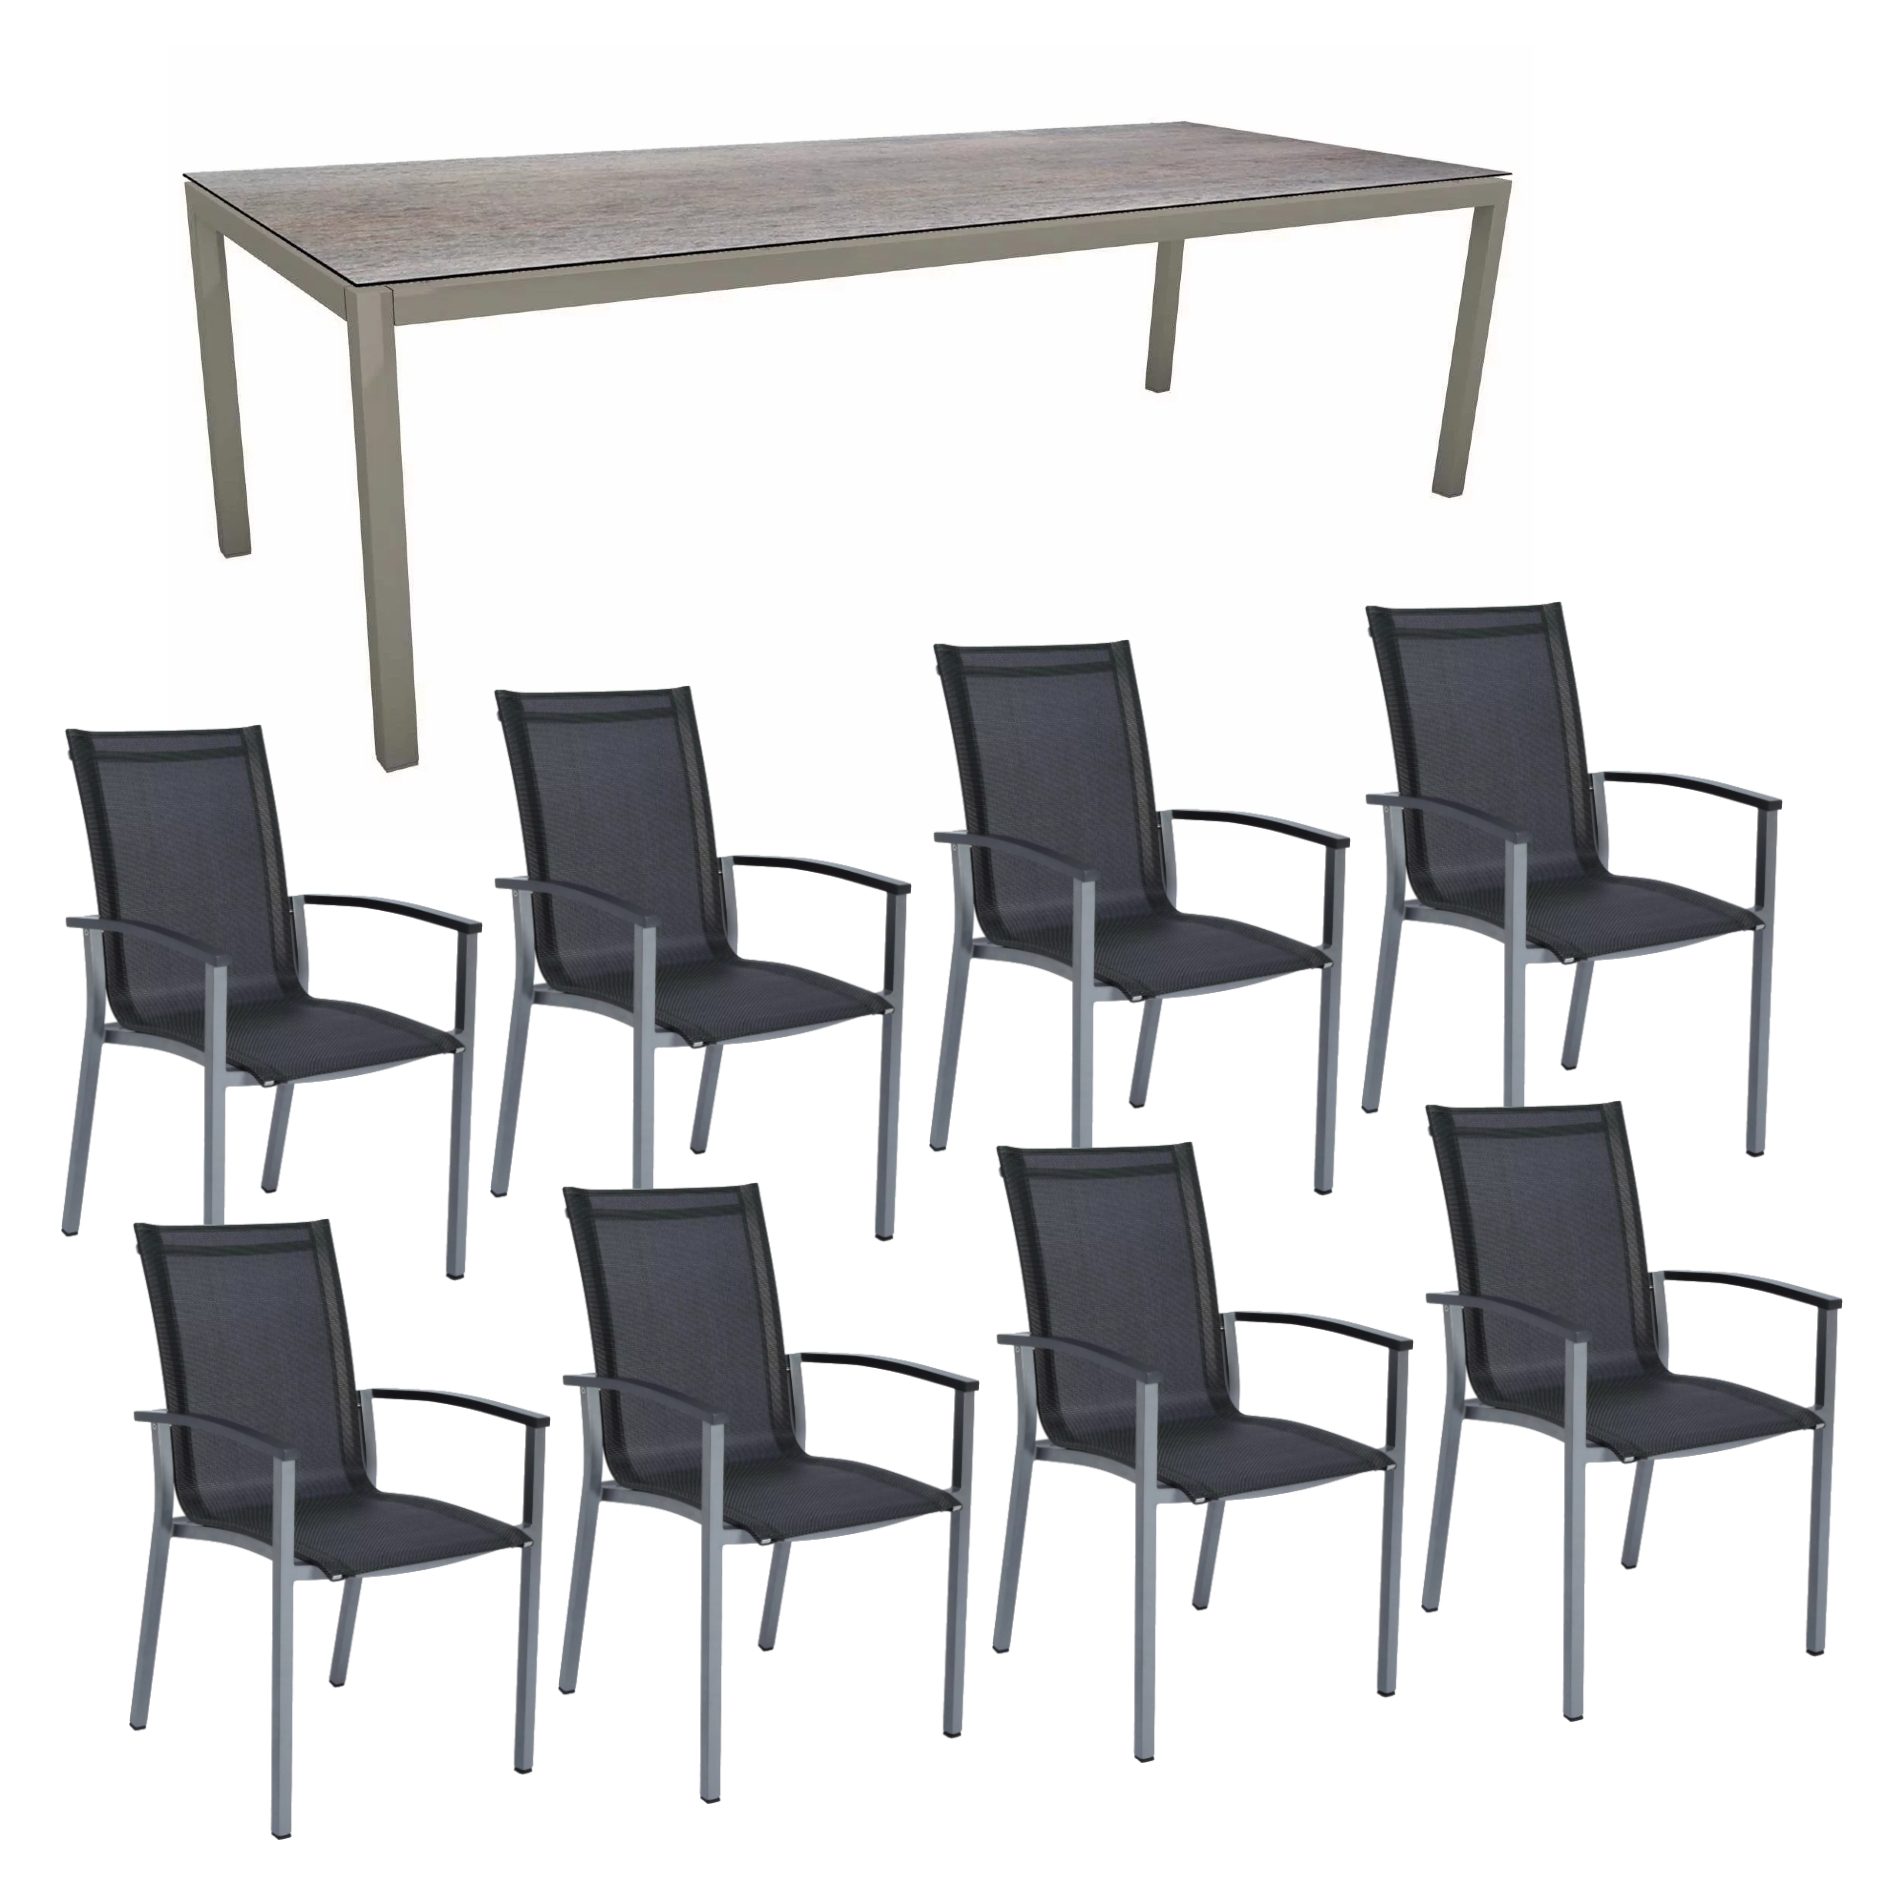 Stern Gartenmöbel-Set mit "Evoee" Stapelsessel & Gartentisch, Gestelle Aluminium graphit, Sitzfläche Textilgewebe silbergrau, Tischplatte HPL Smoky